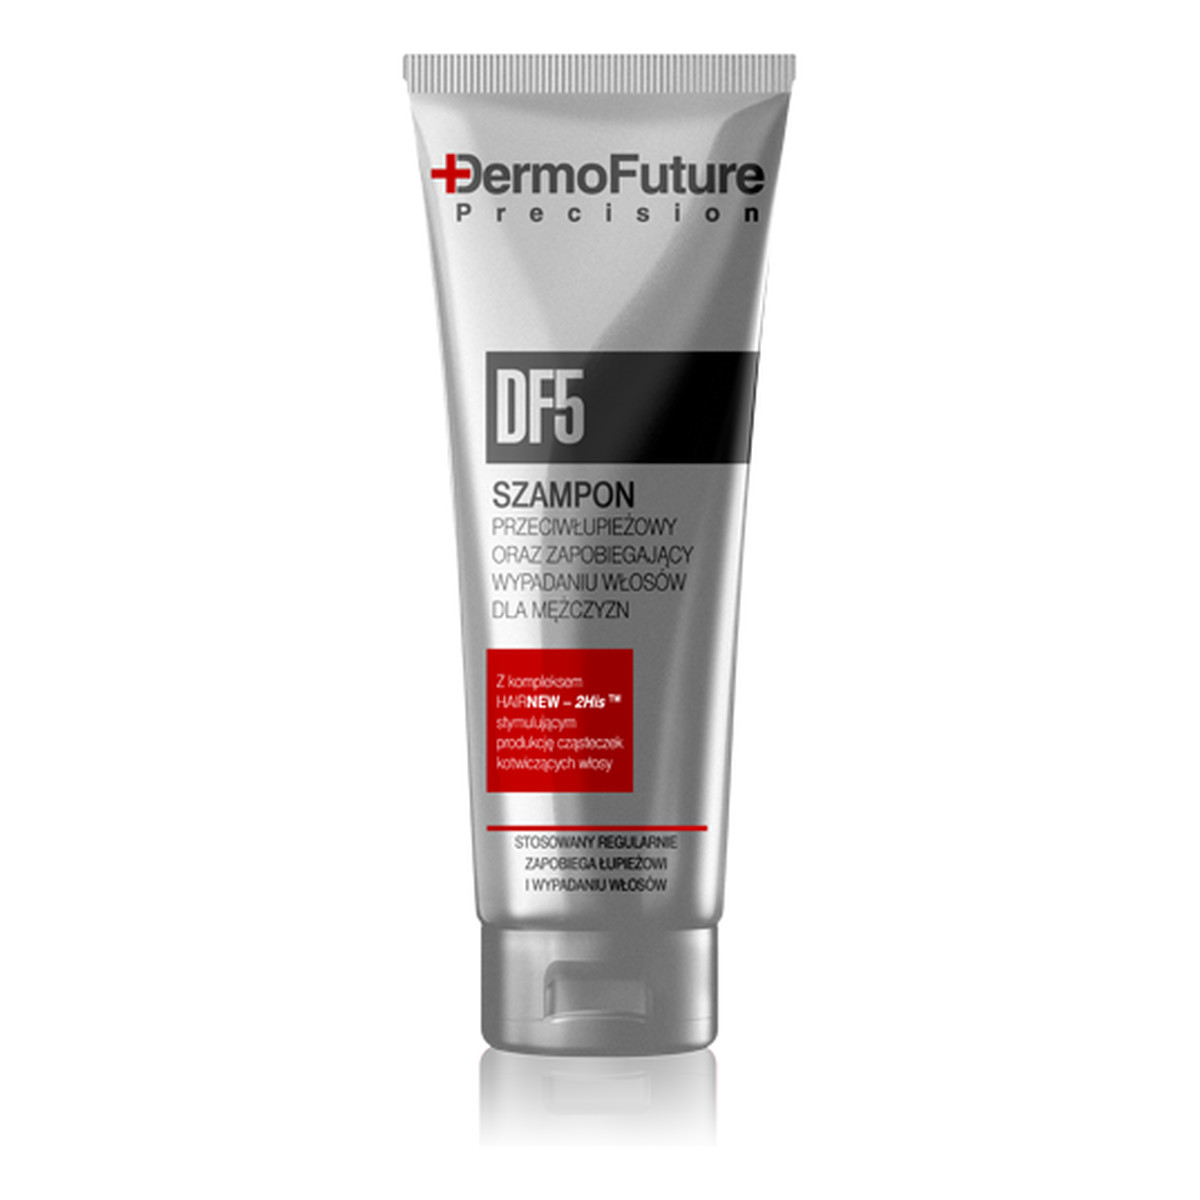 DermoFuture DF5 Szampon Przeciwłupieżowy i Zapobiegający Wypadaniu Włosów Dla Mężczyzn 250ml